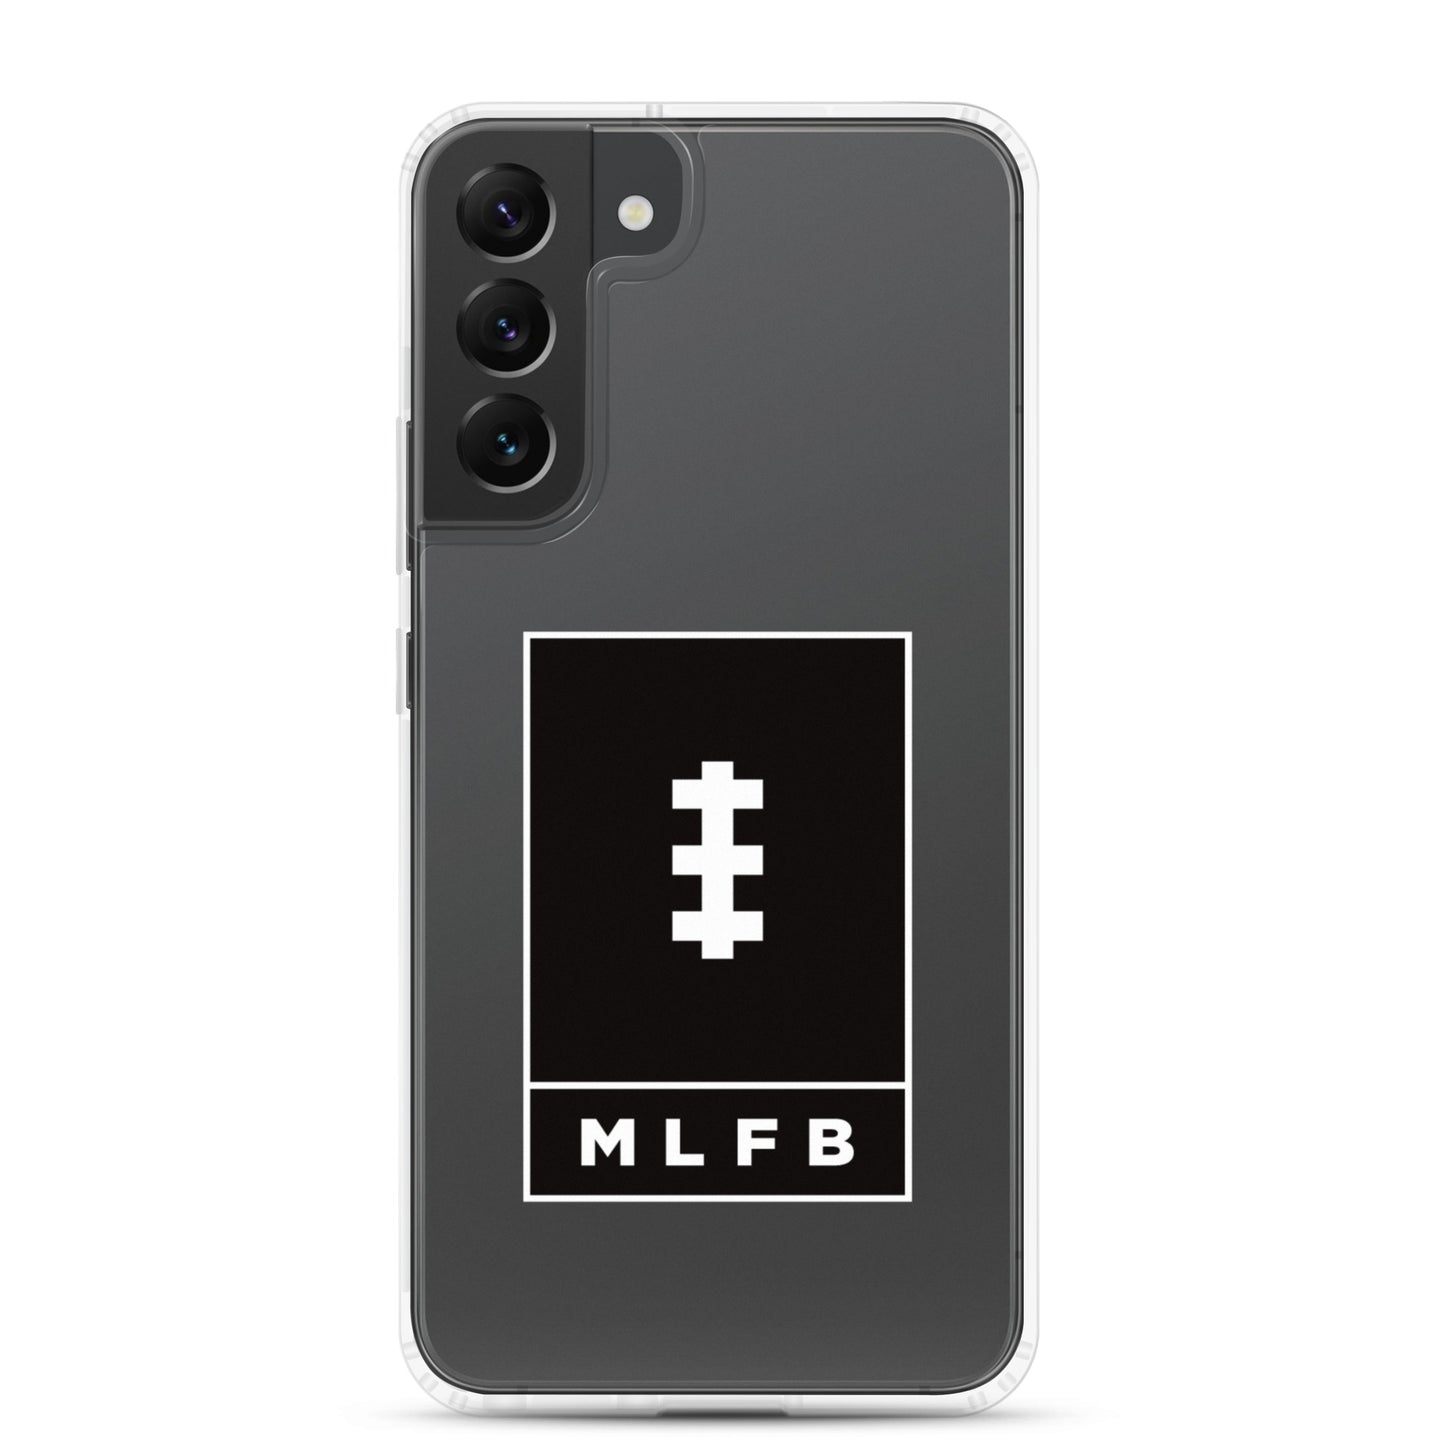 MLFB Samsung Case